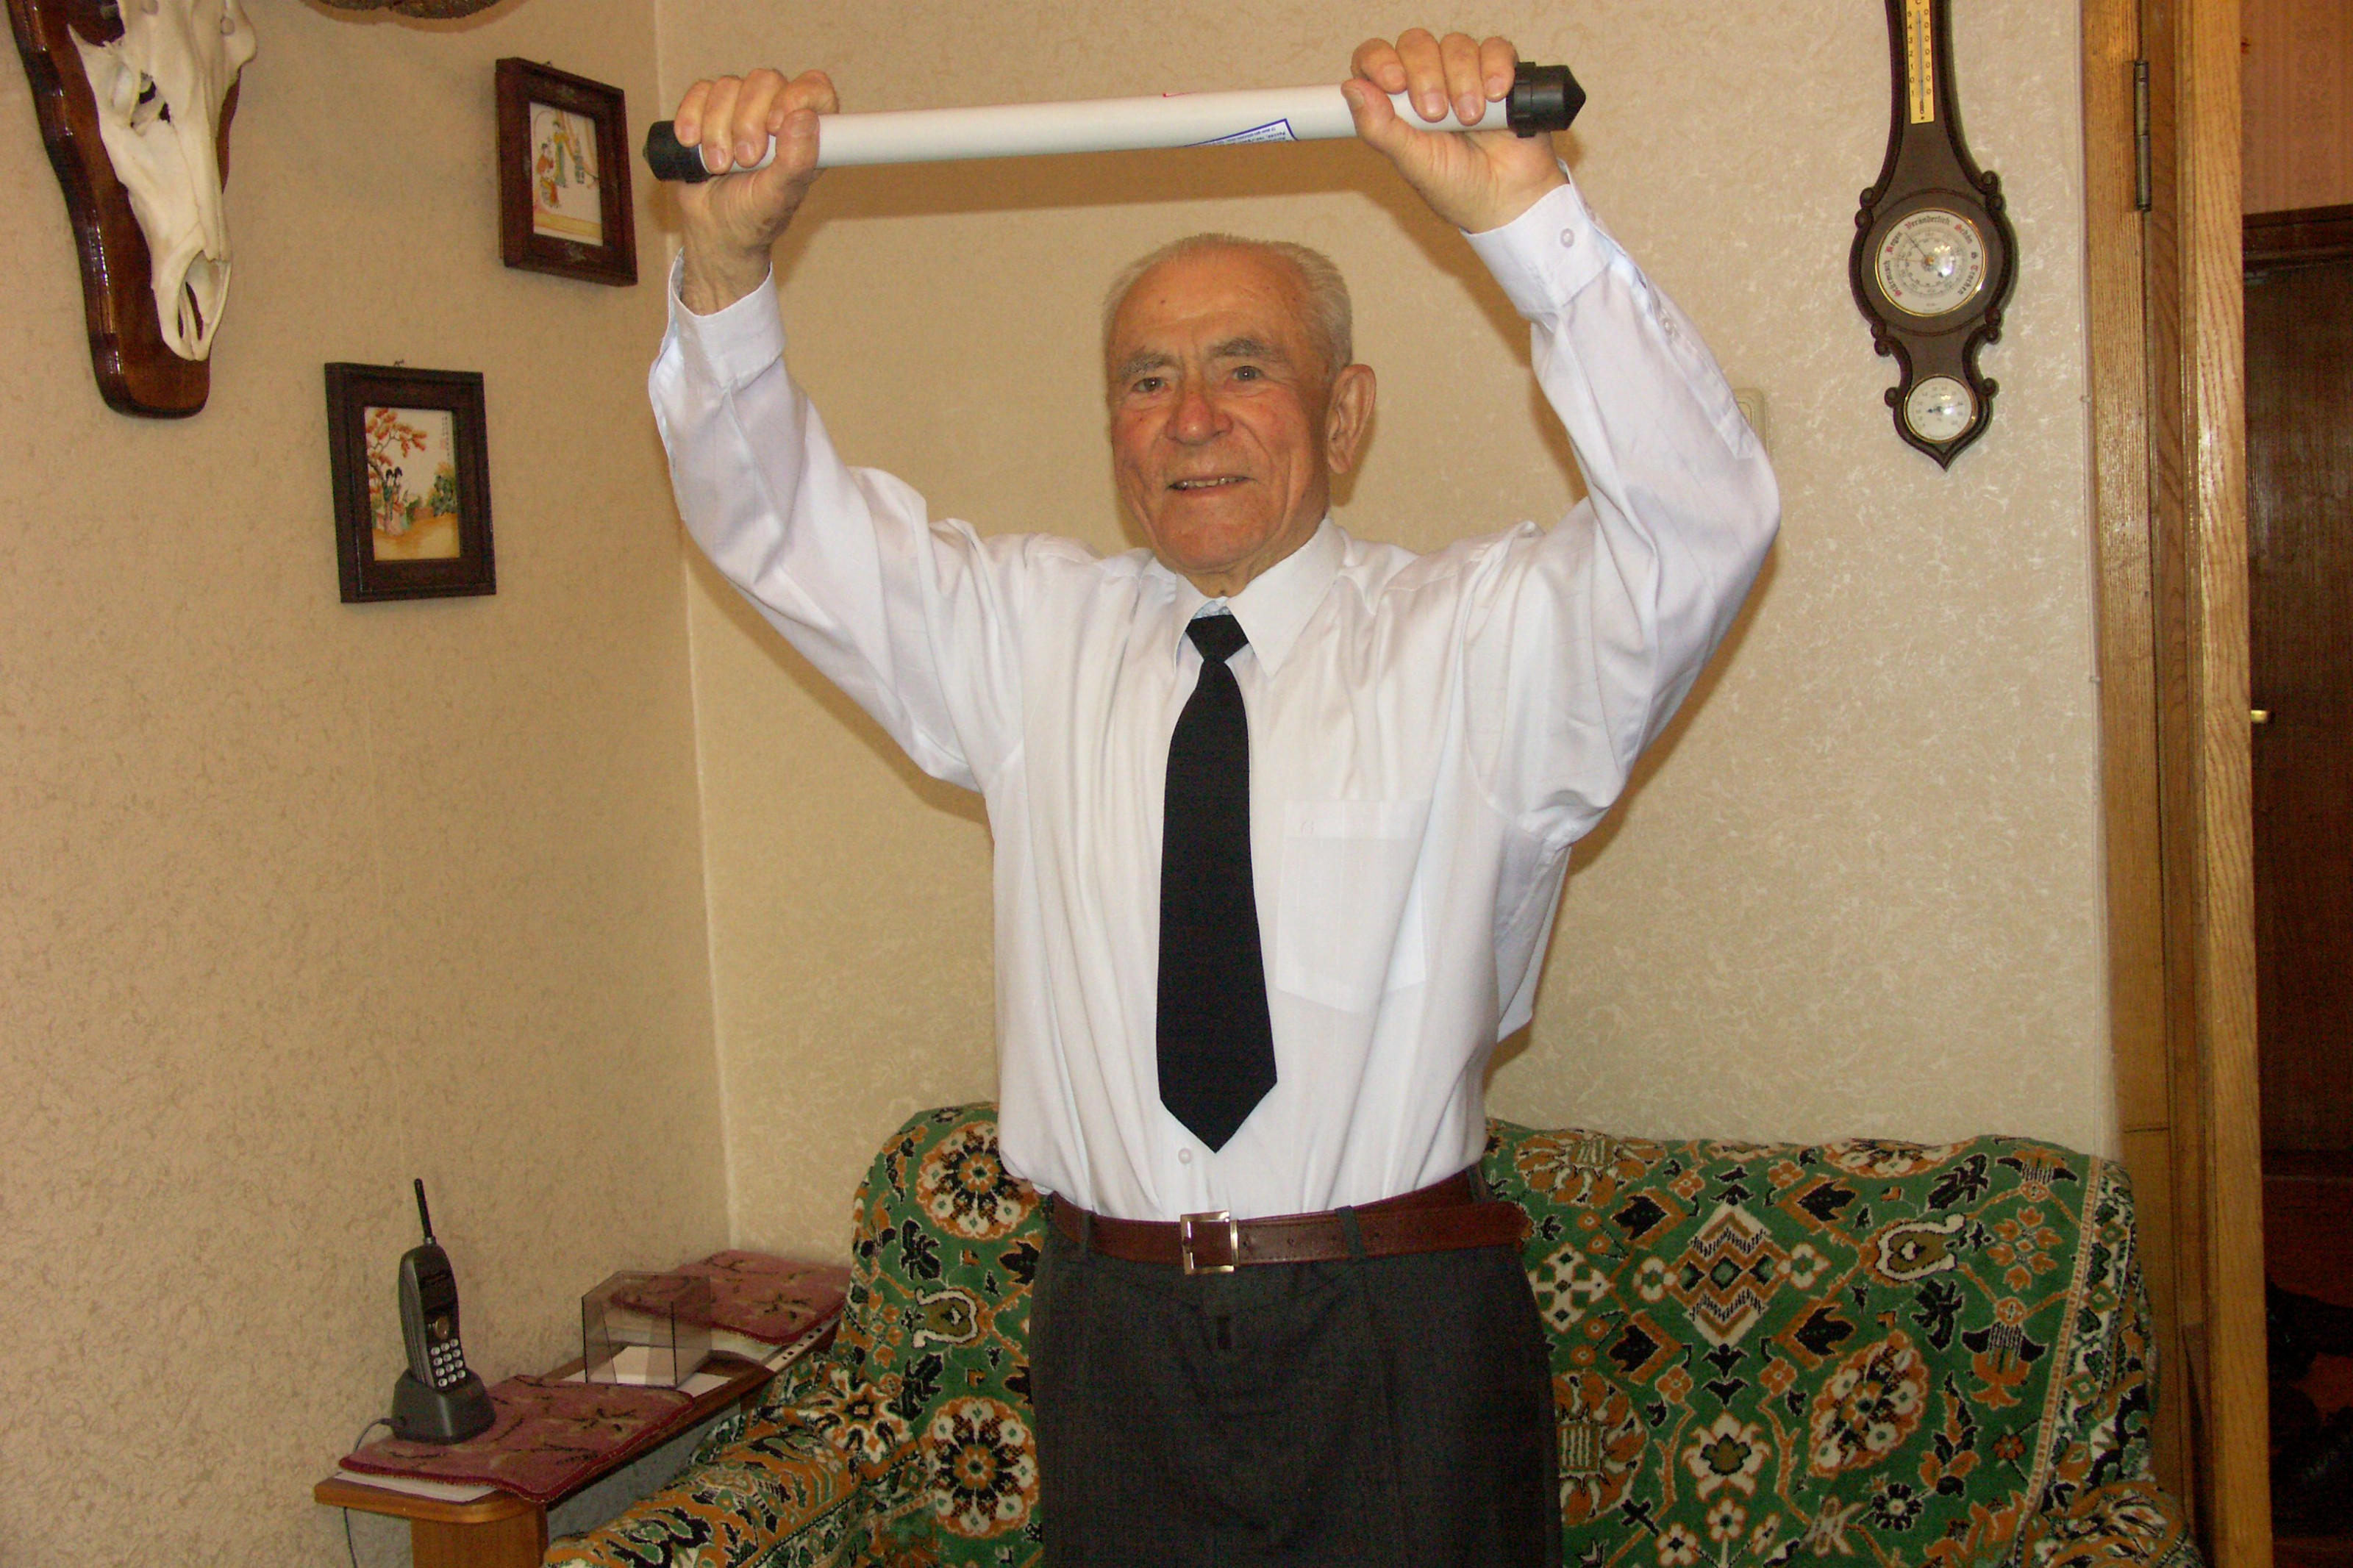 Герой Советского Союза, 90 лет, 4 тяжелых ранения с тренажером Агашина!